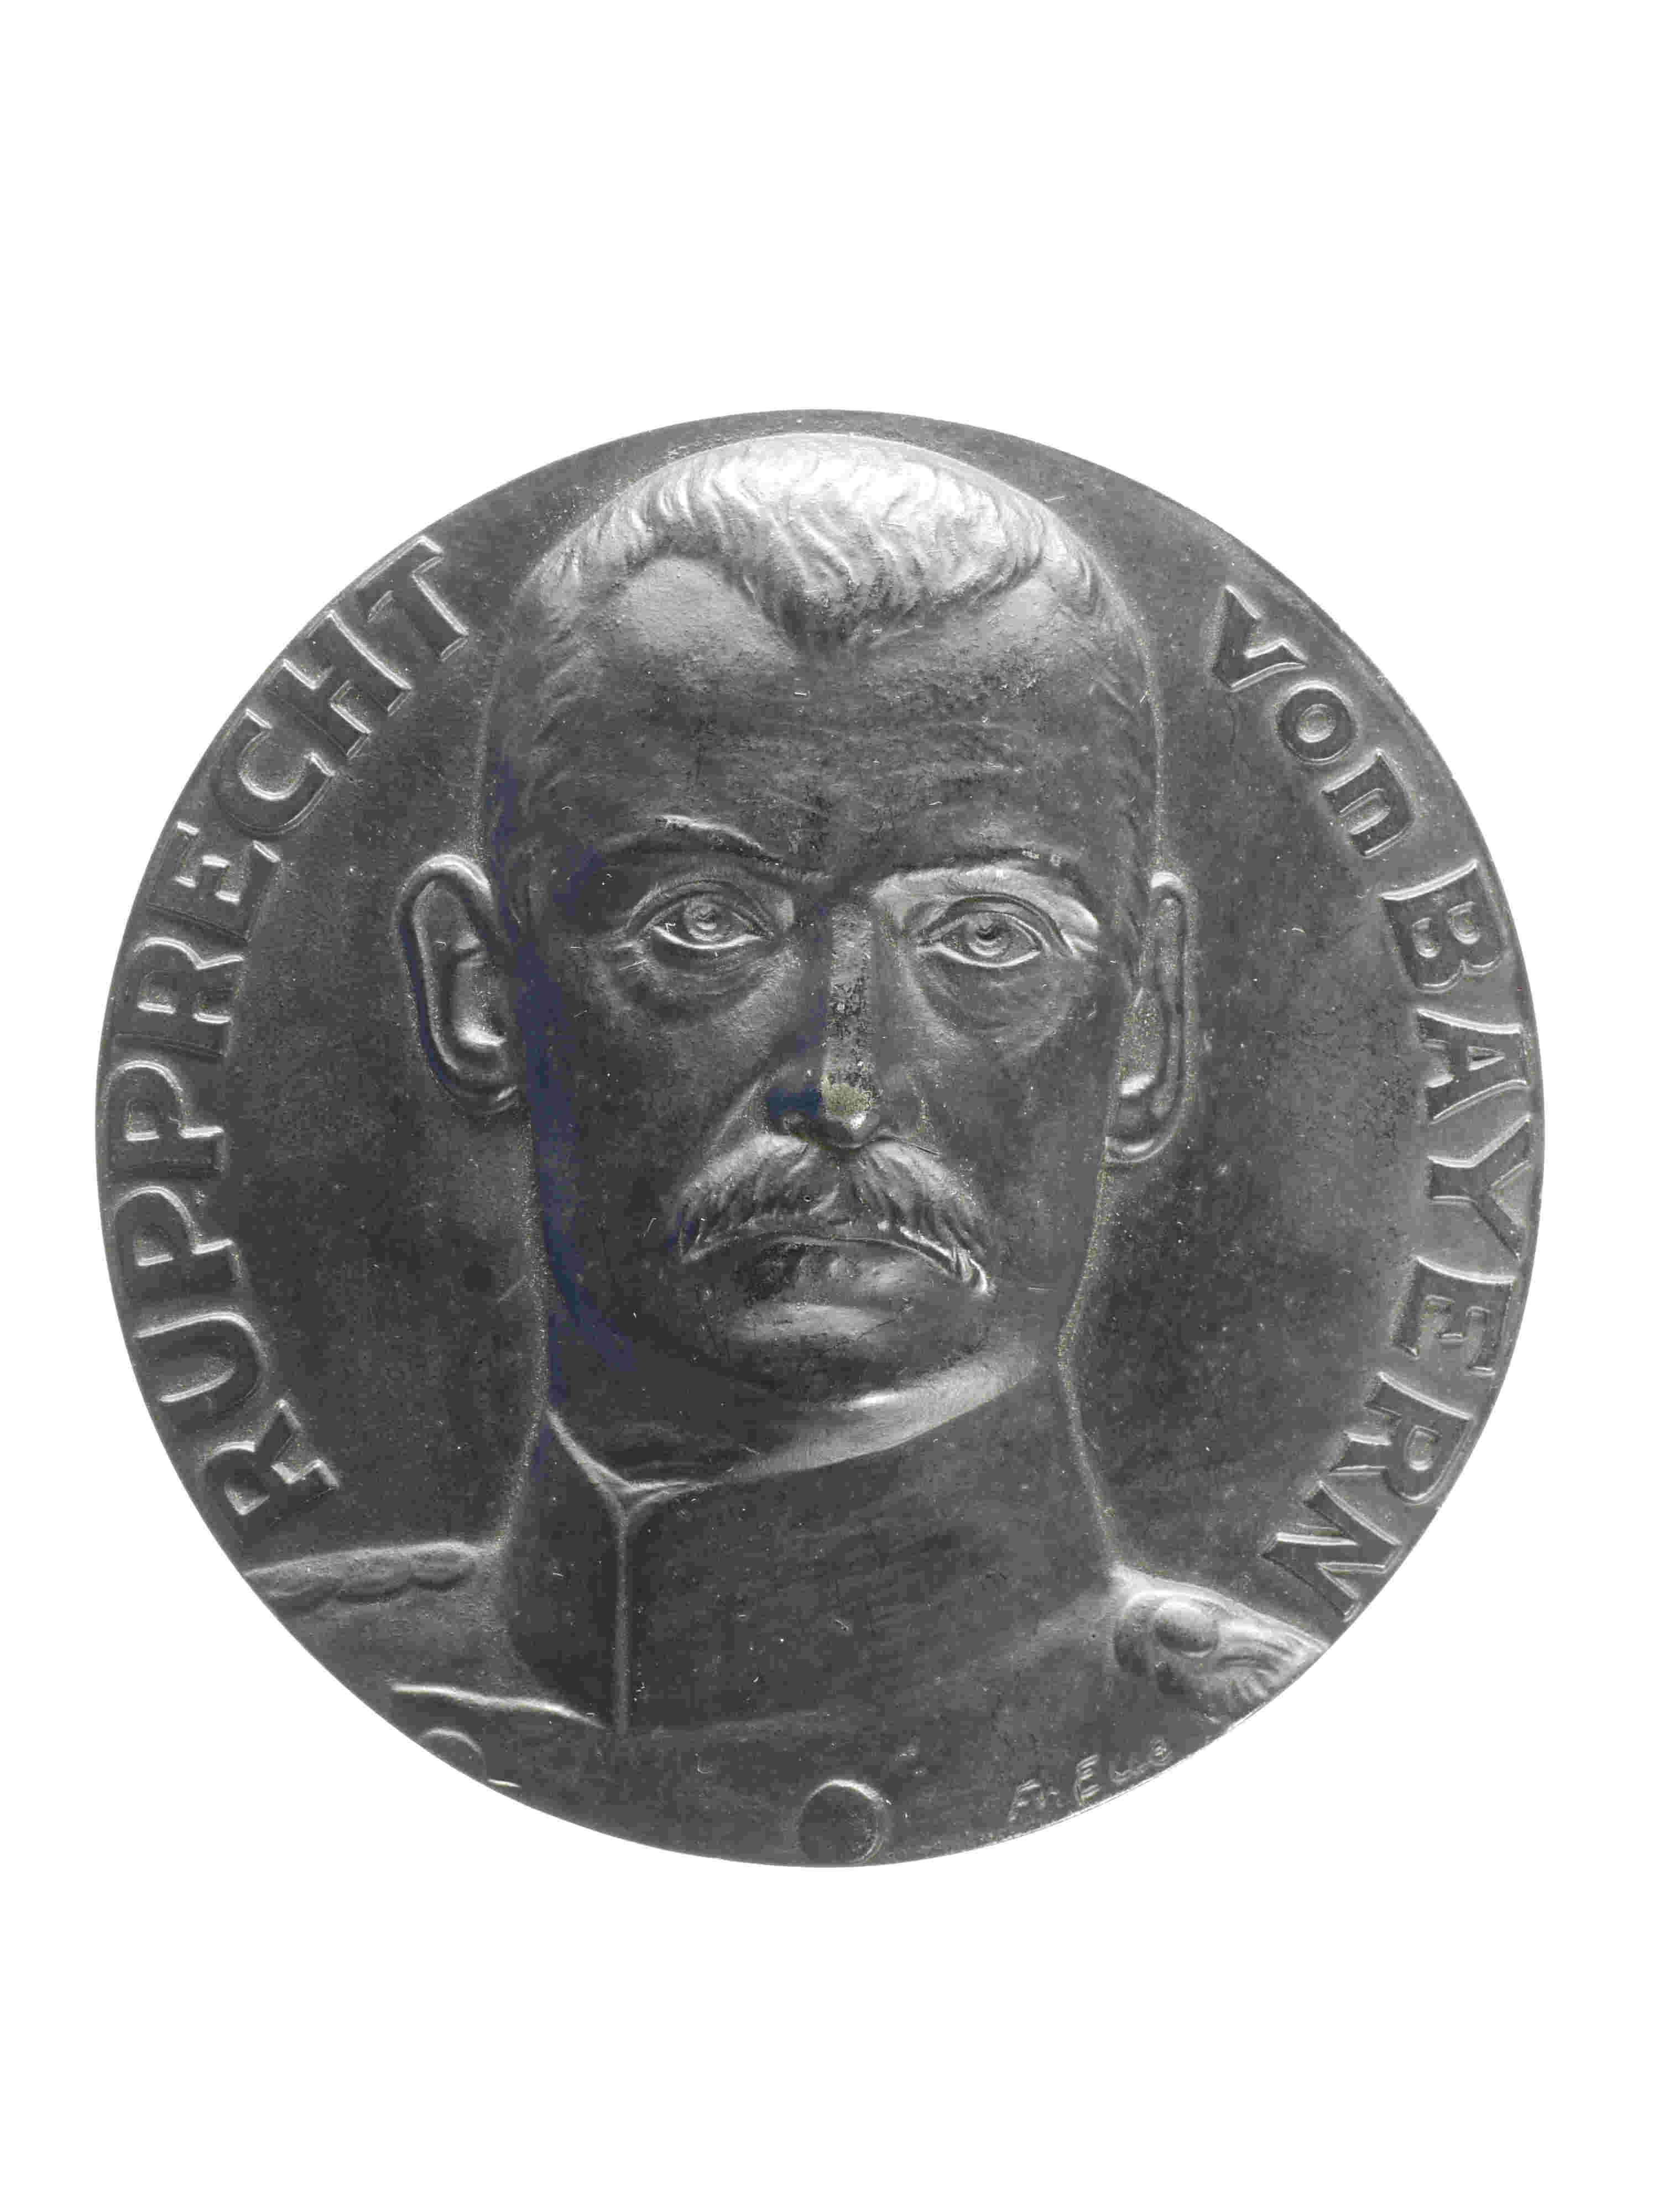 Medaille "Rupprecht von Bayern" 1914/1915 (Historisches Museum der Pfalz, Speyer CC BY)